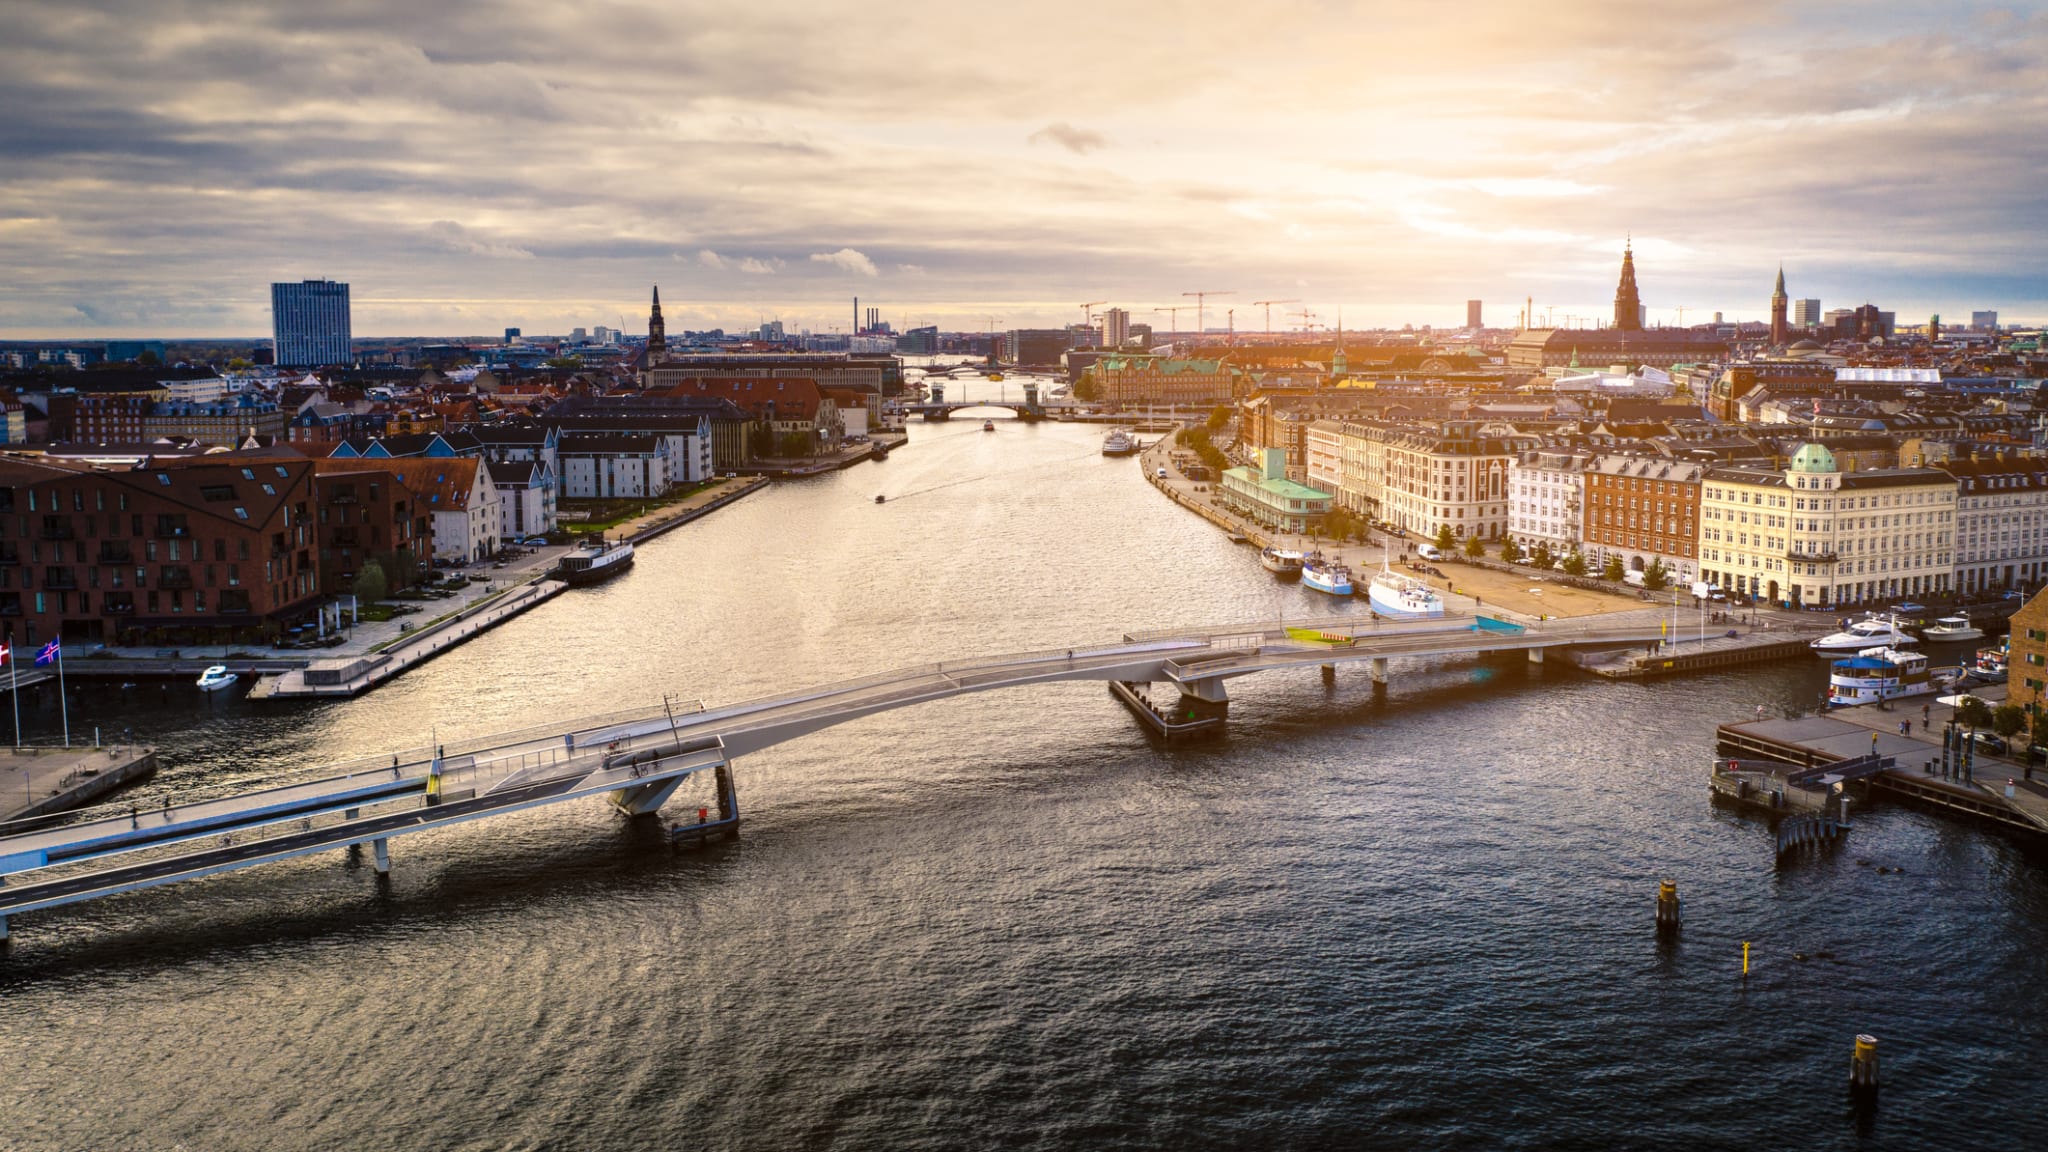 Luftaufnahme des Kopenhagener Stadtbildes mit moderner Fahrradbrücke © iStock.com/jonathanfilskov-photography